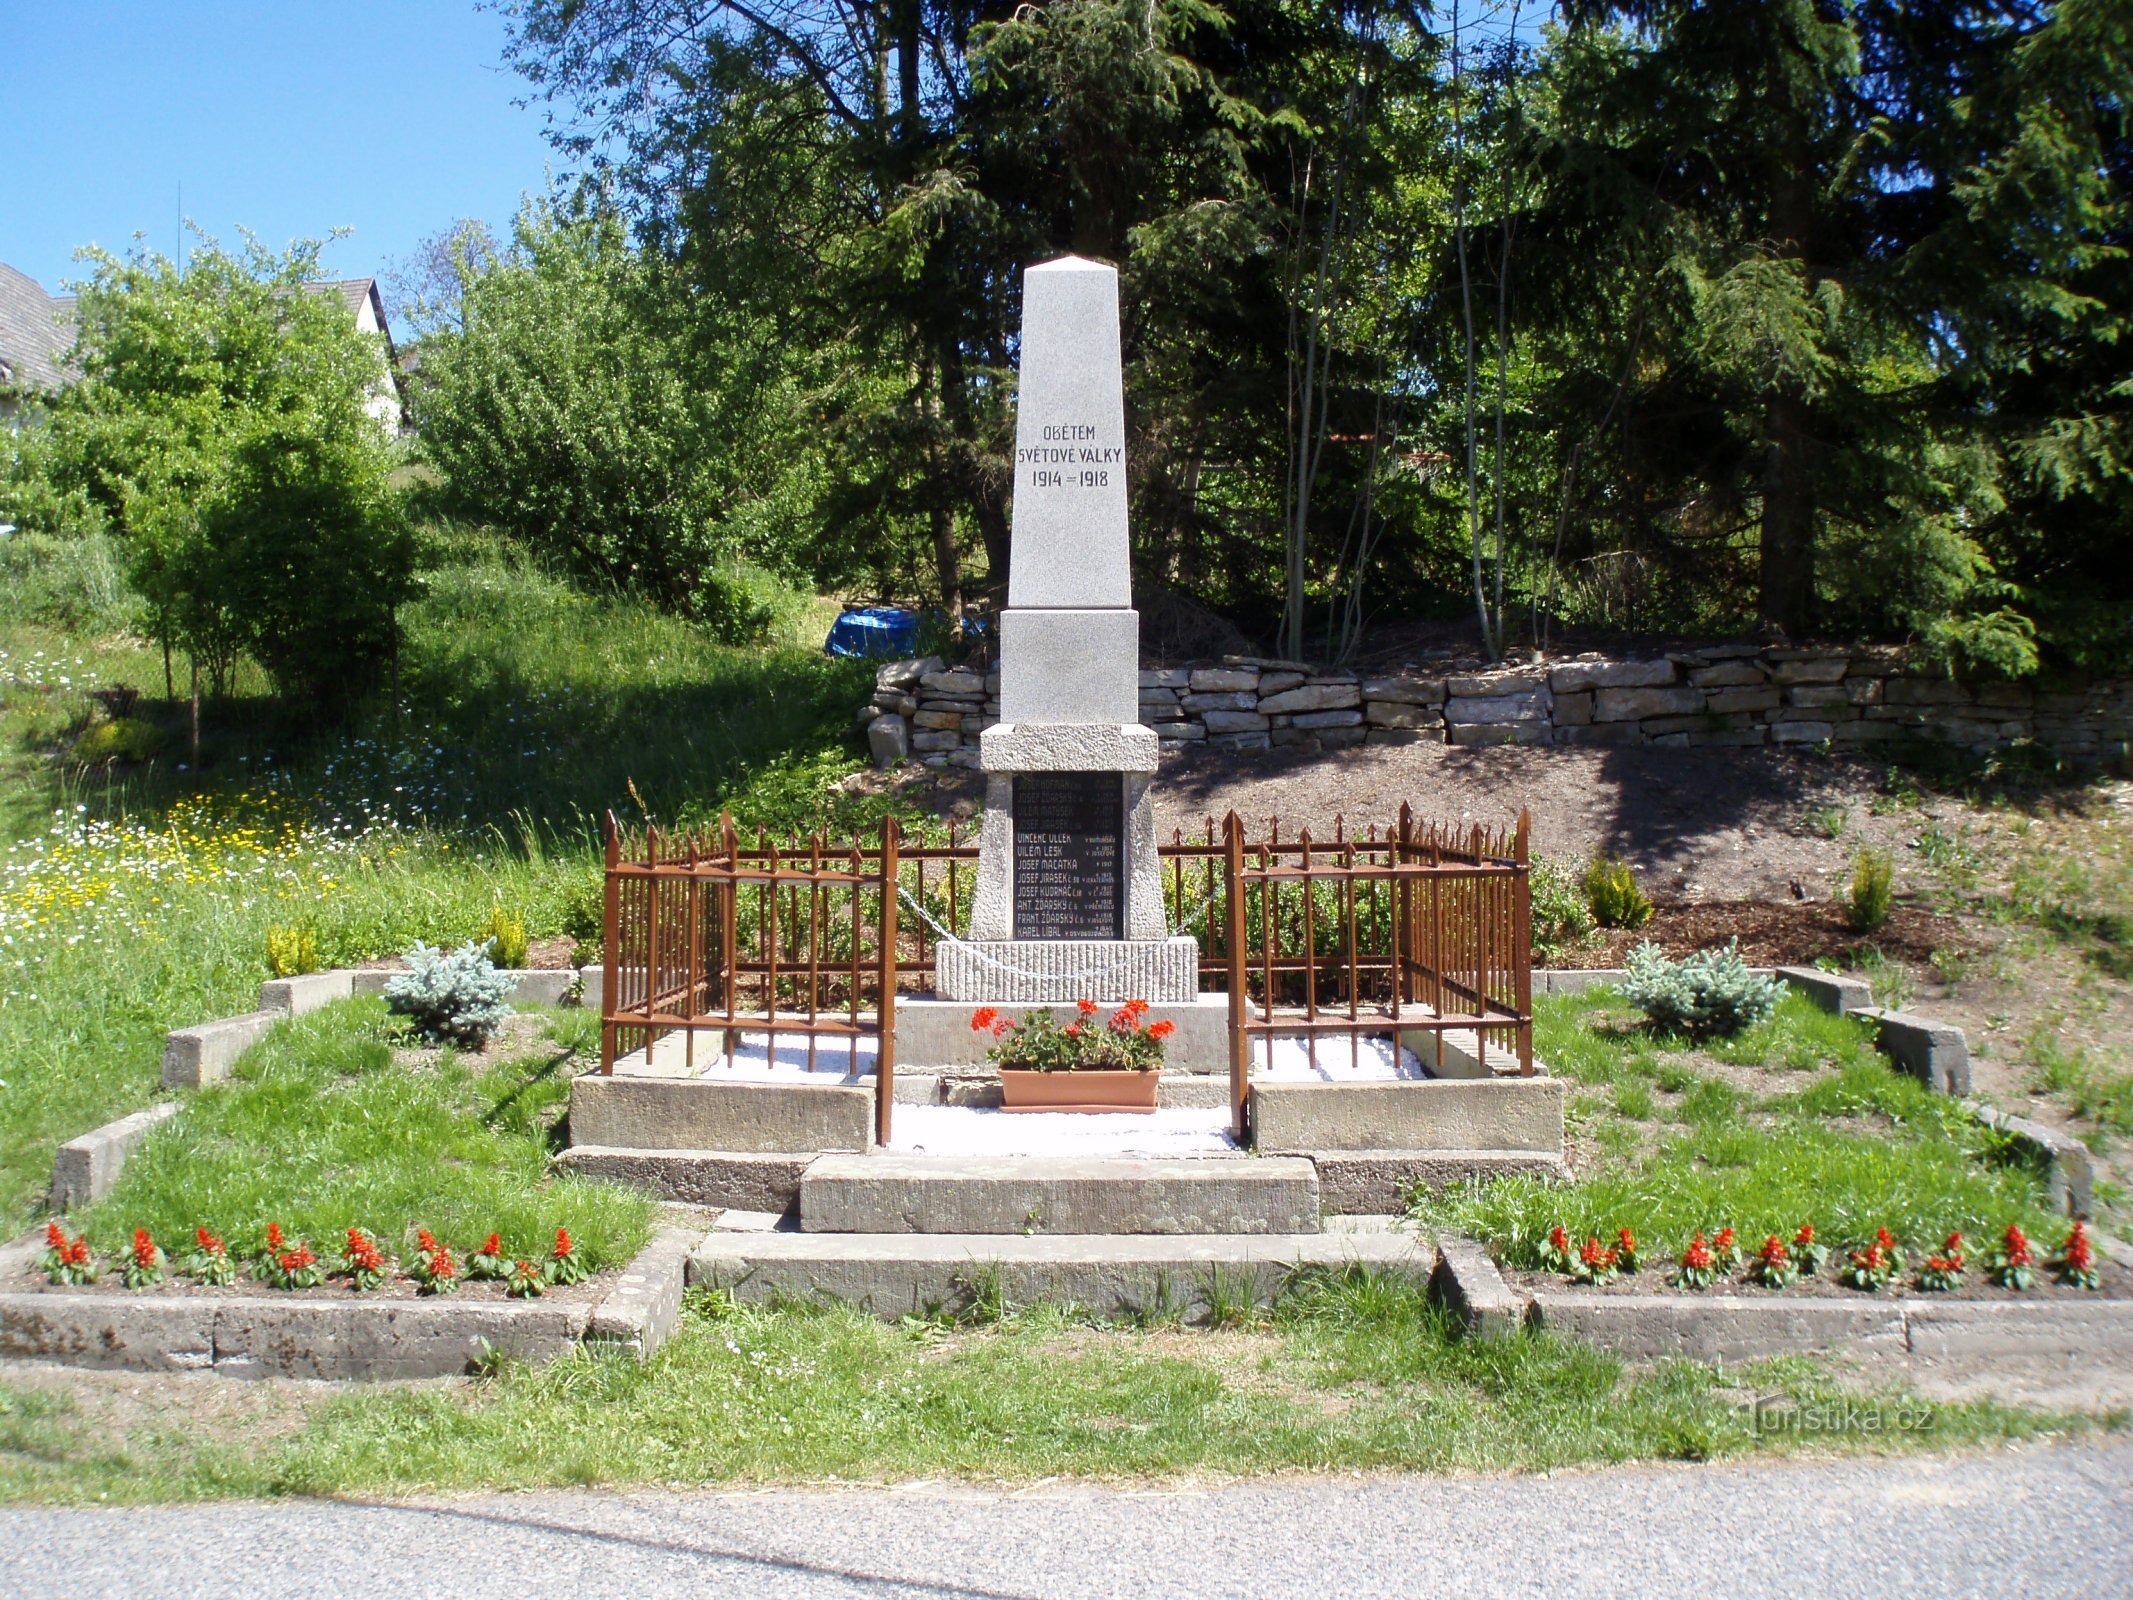 第一次世界大戦で亡くなった人々の記念碑 (Brzice)